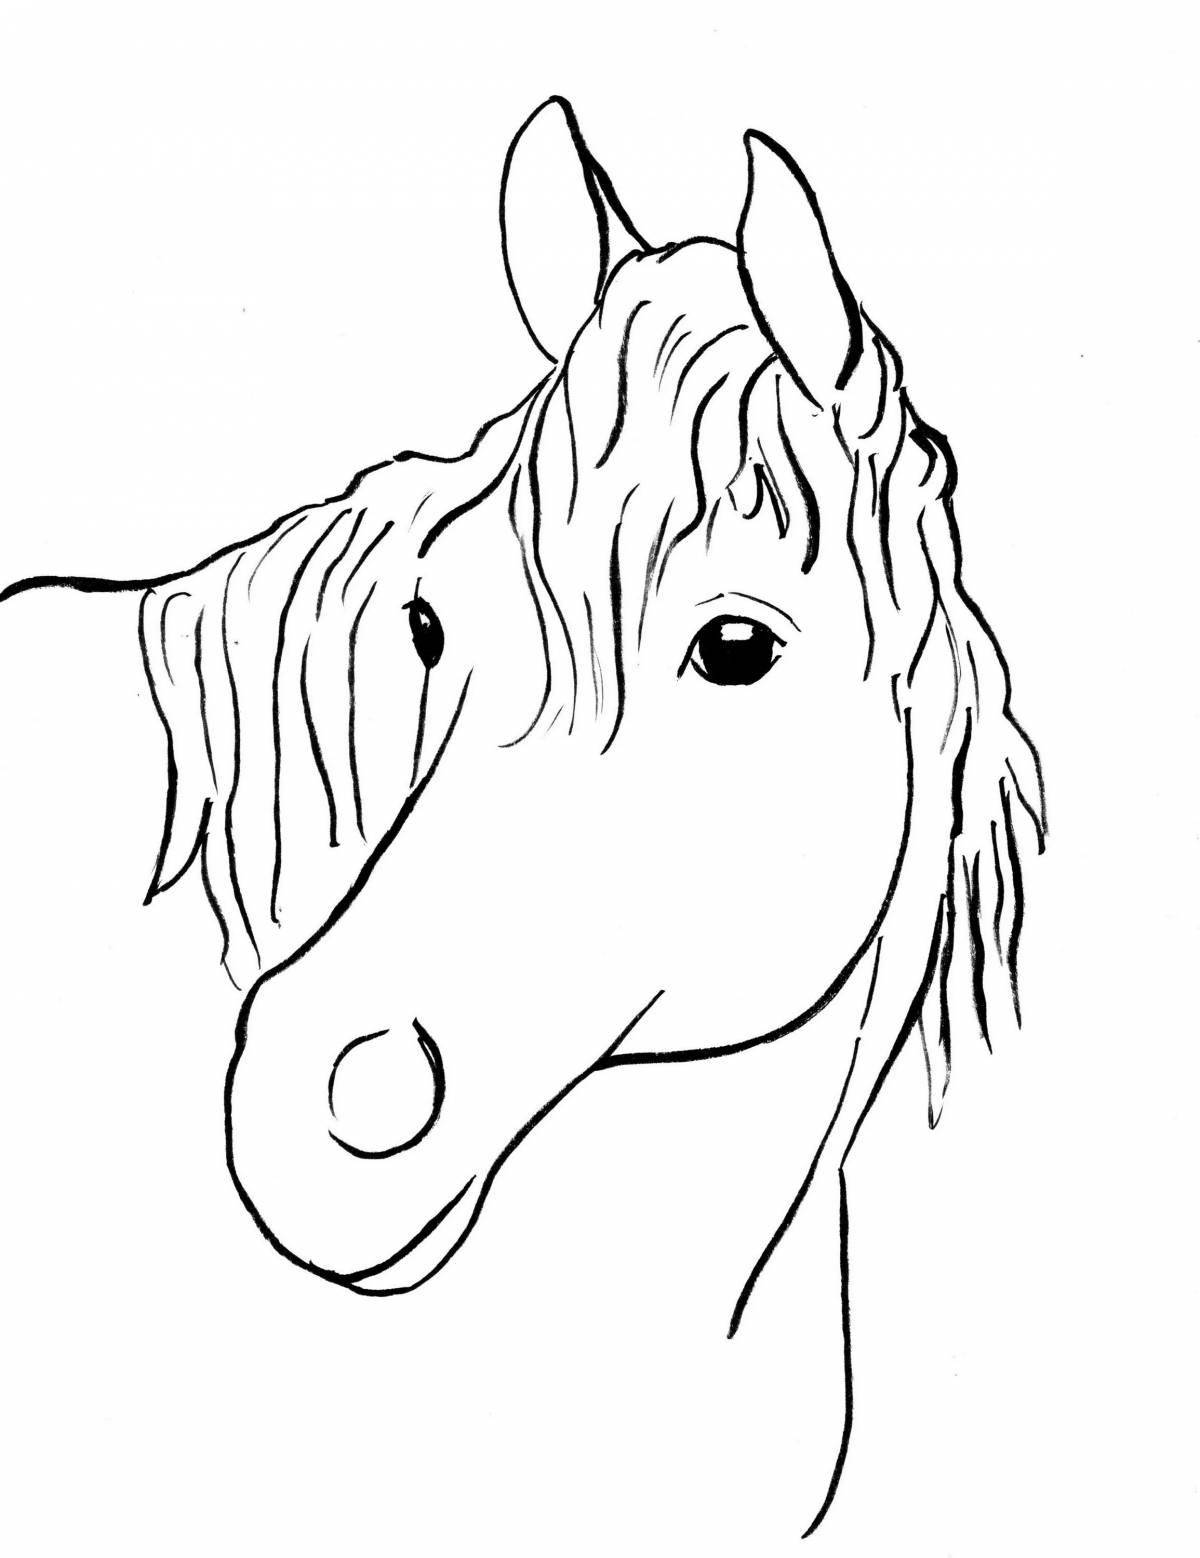 Роскошная раскраска голова лошади